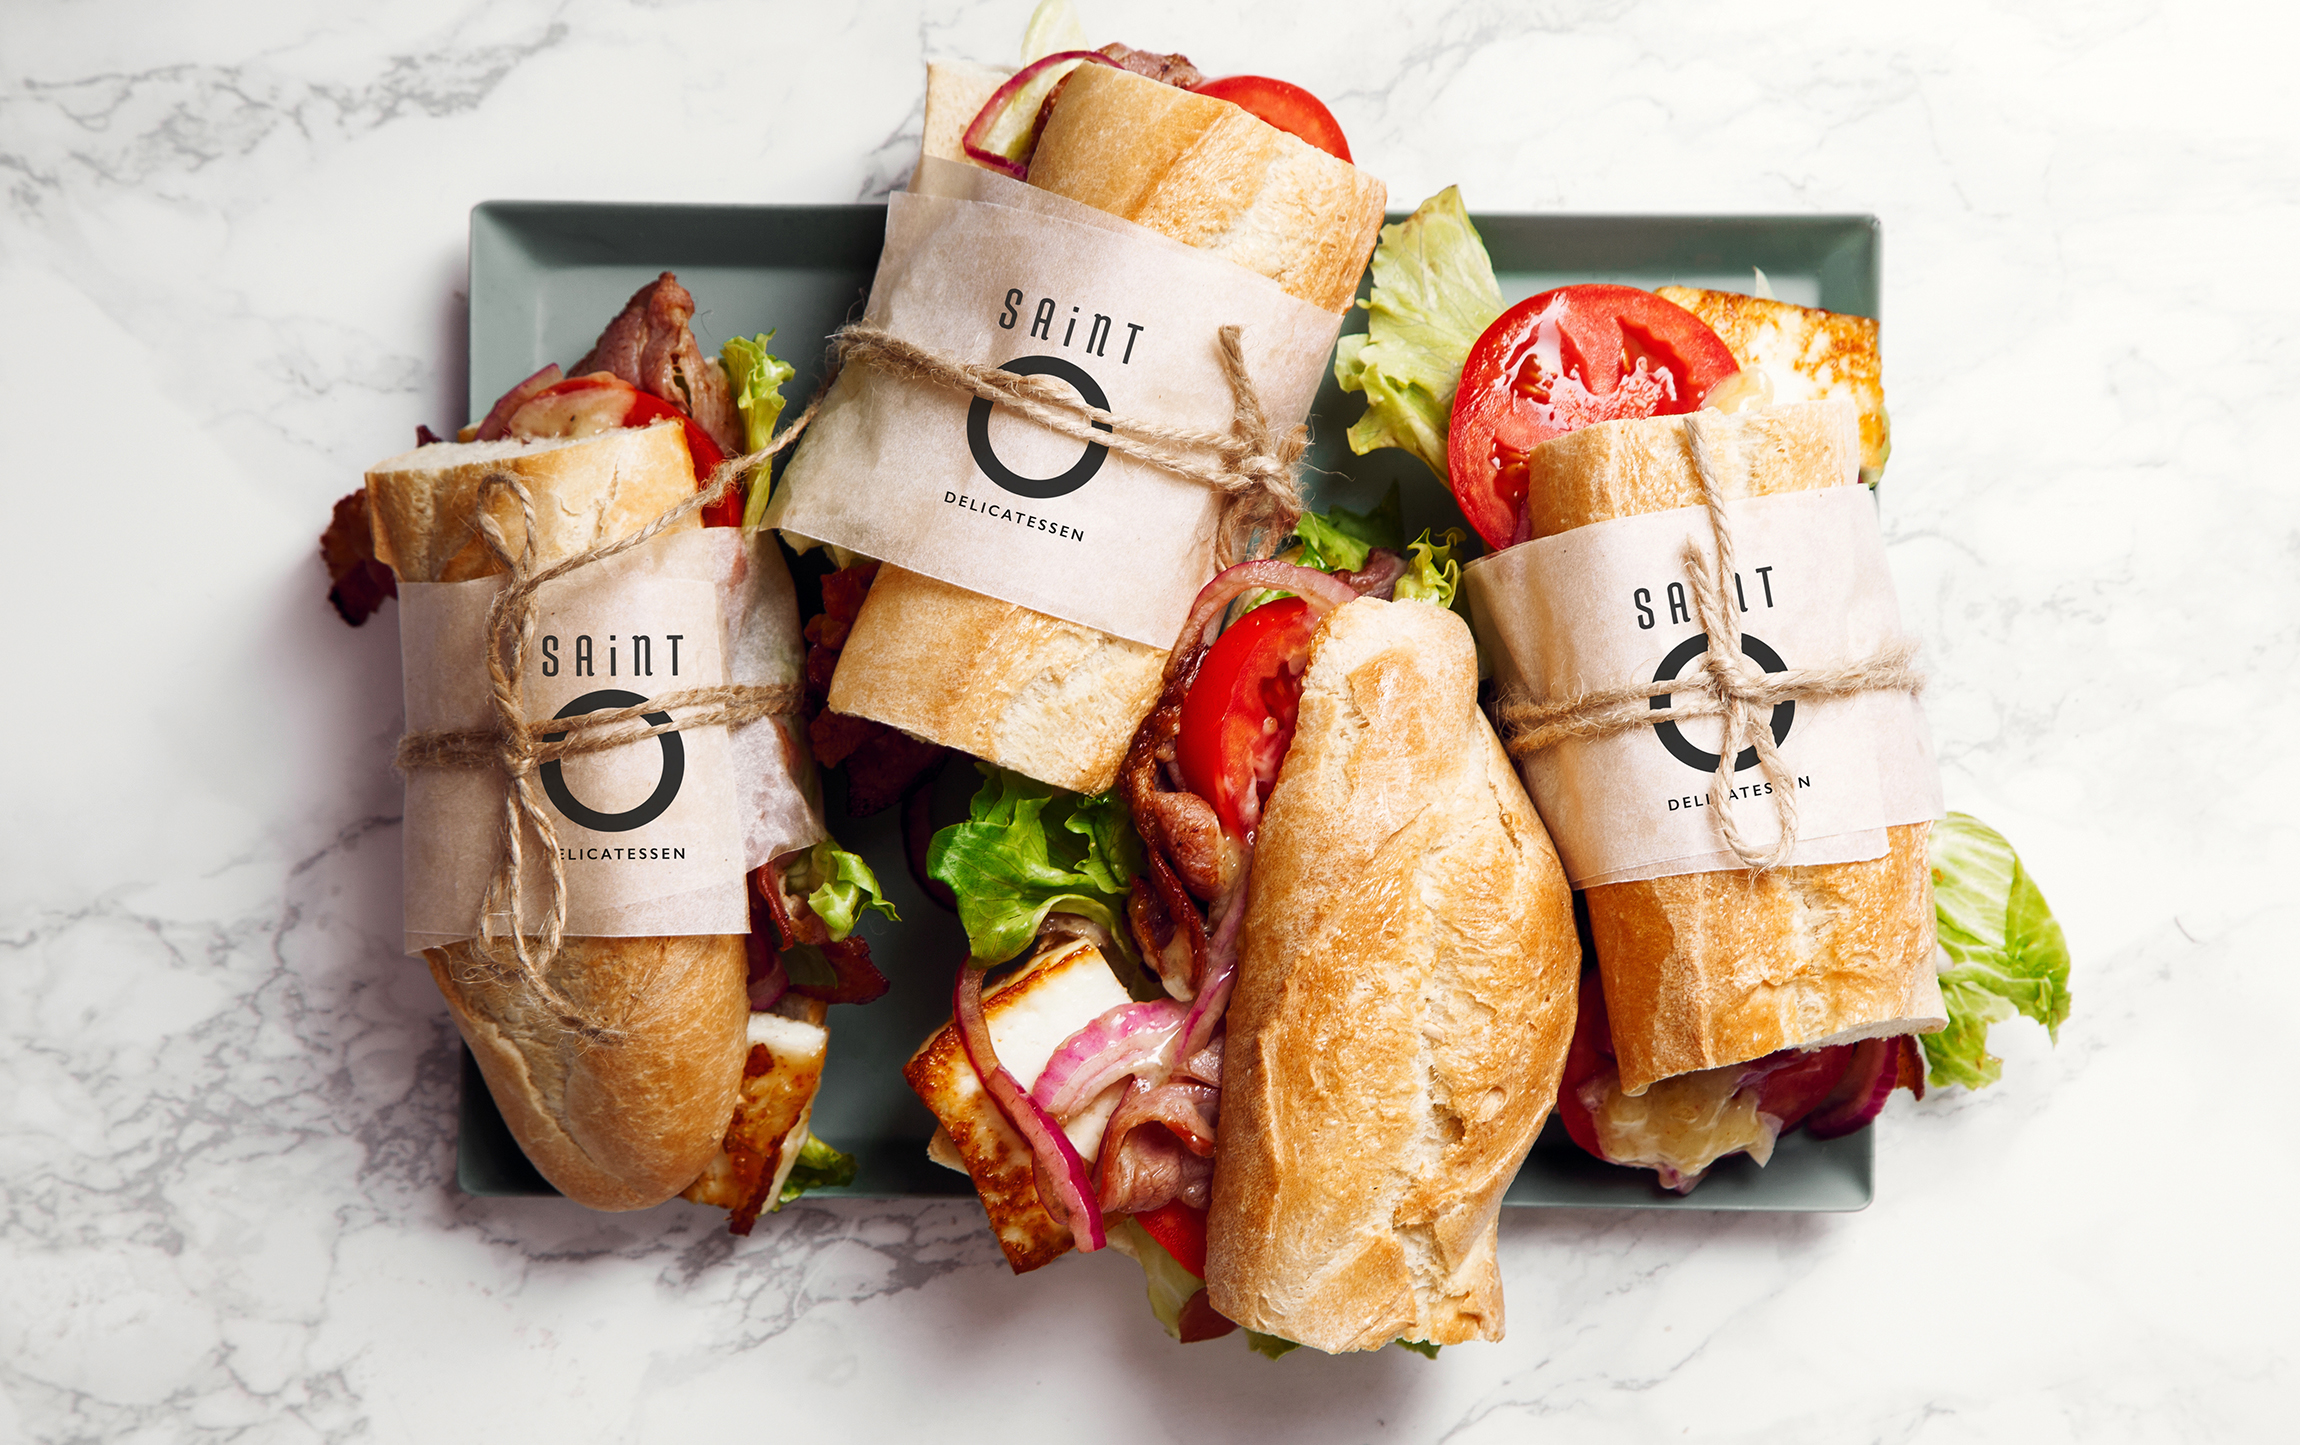 Saint O Delicatessen sandwich packaging